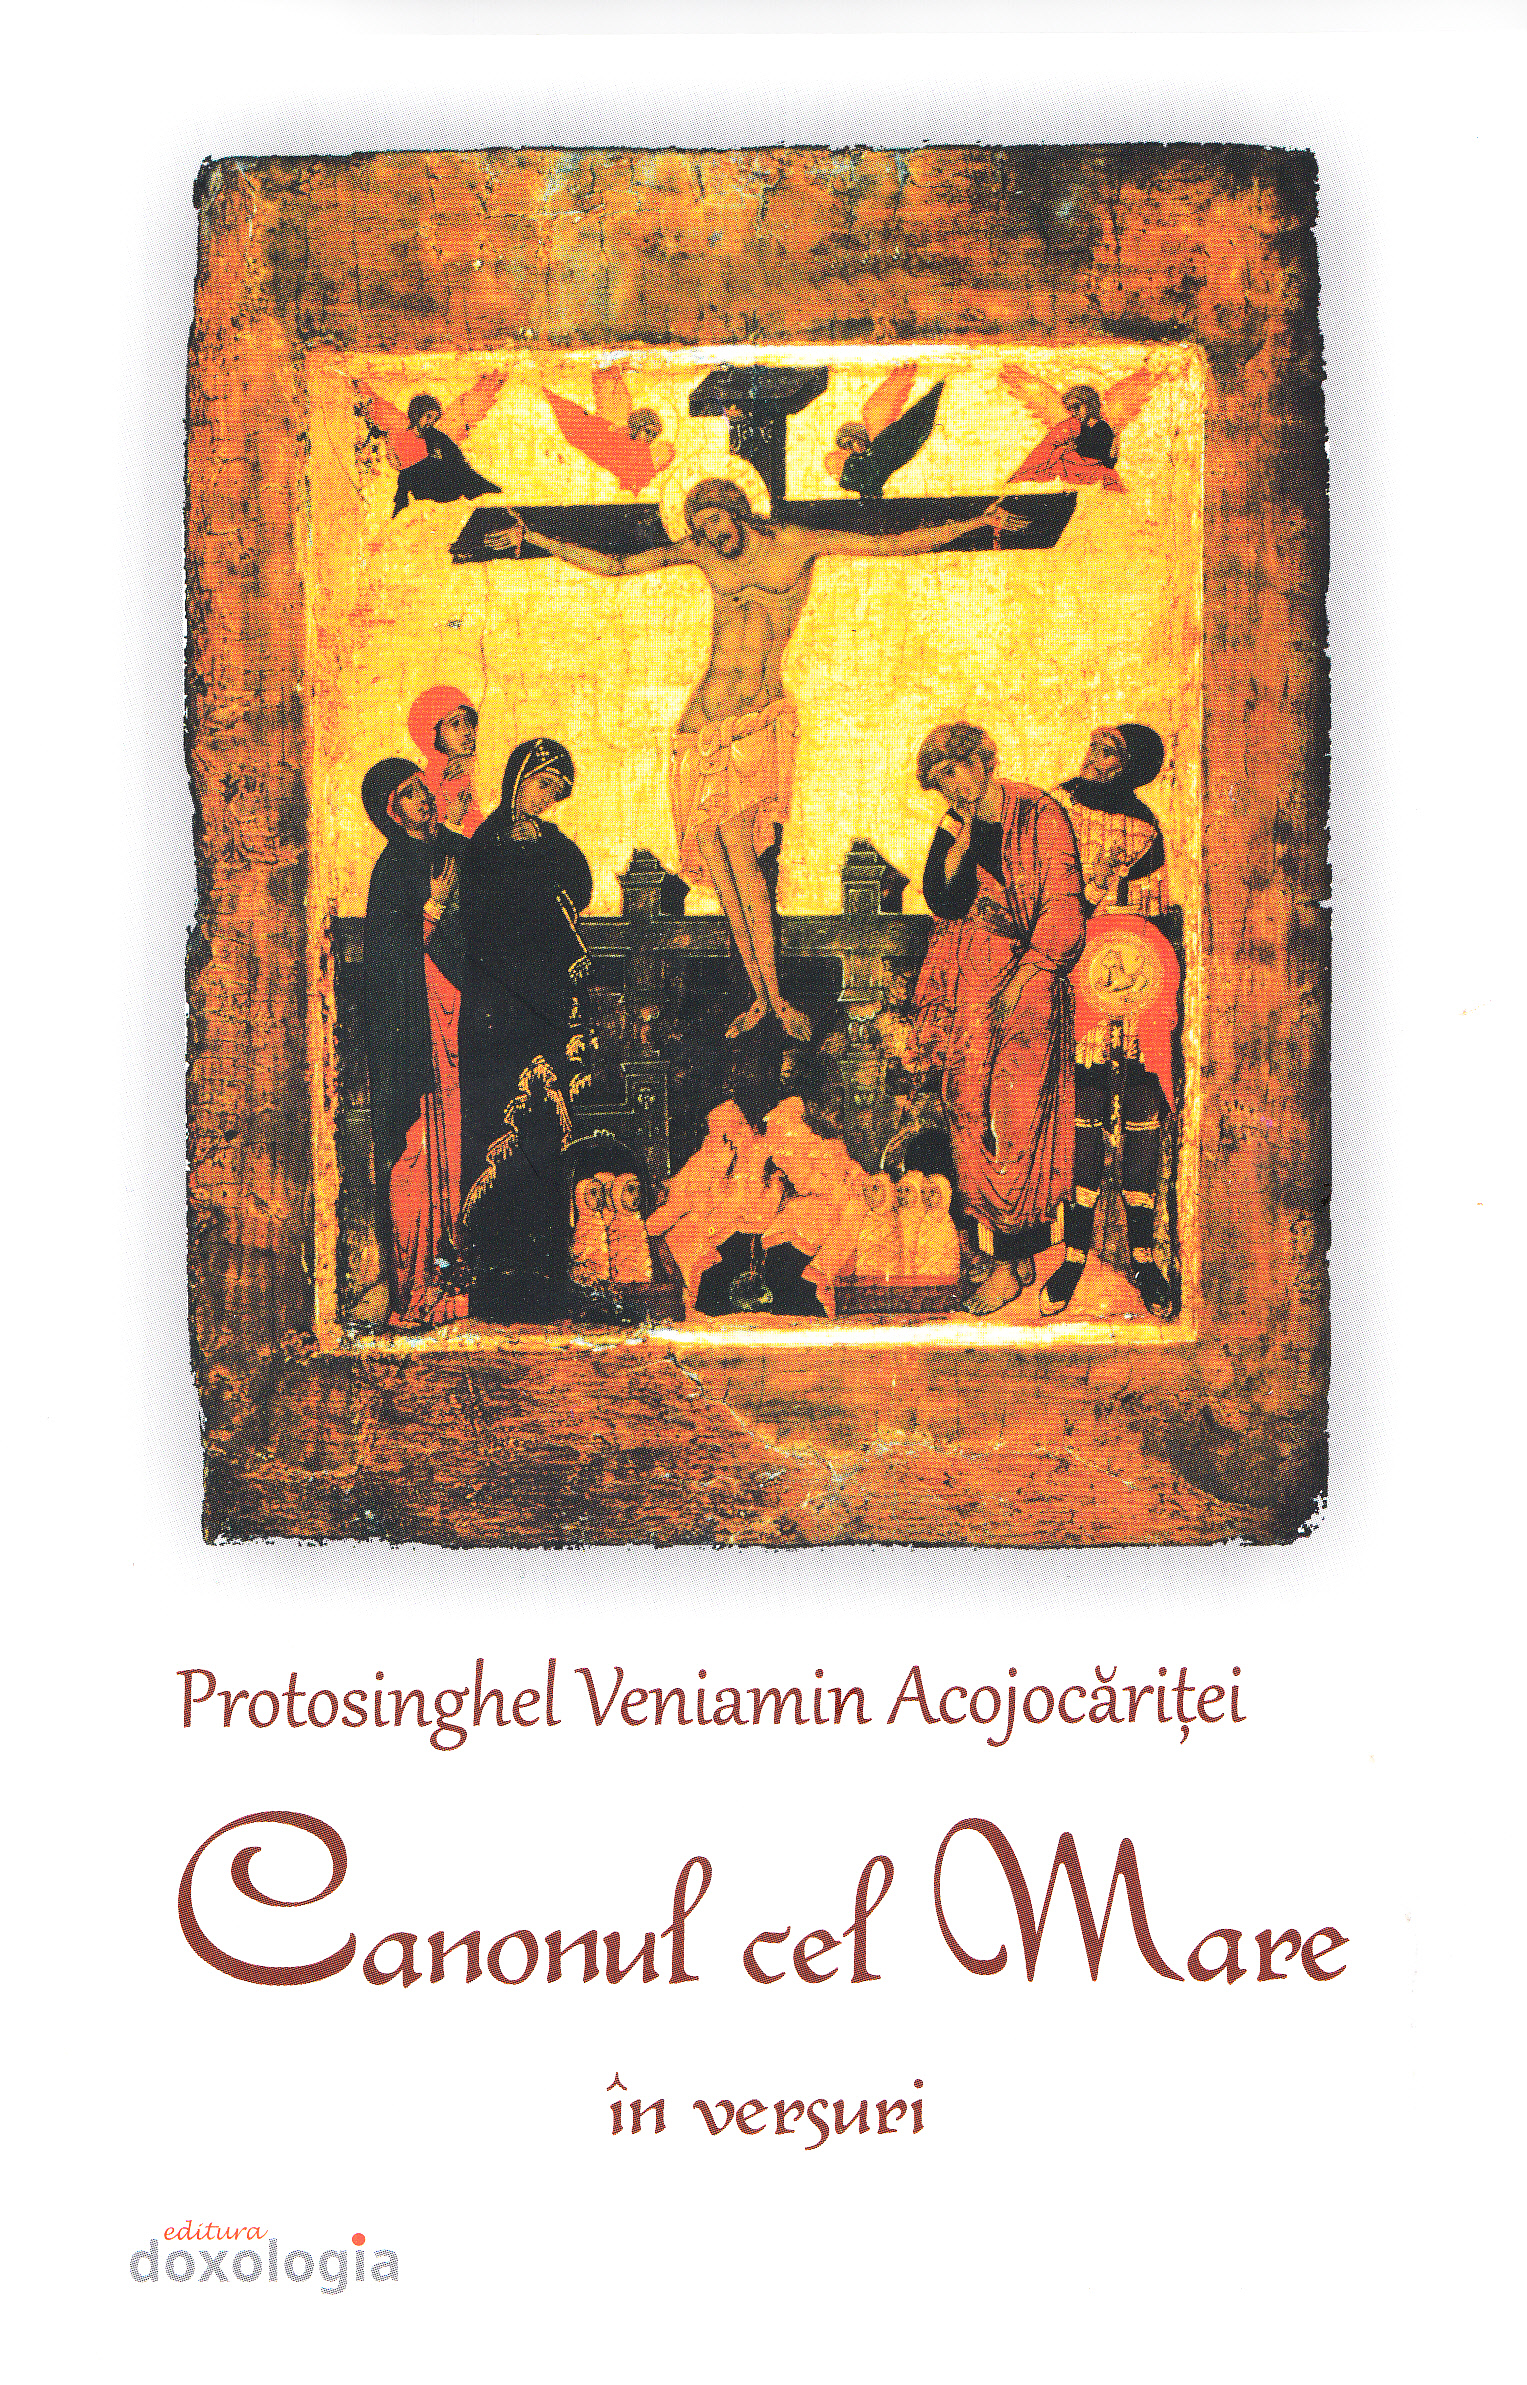 Canonul cel mare in versuri - Protosinghel Veniamin Acojocaritei